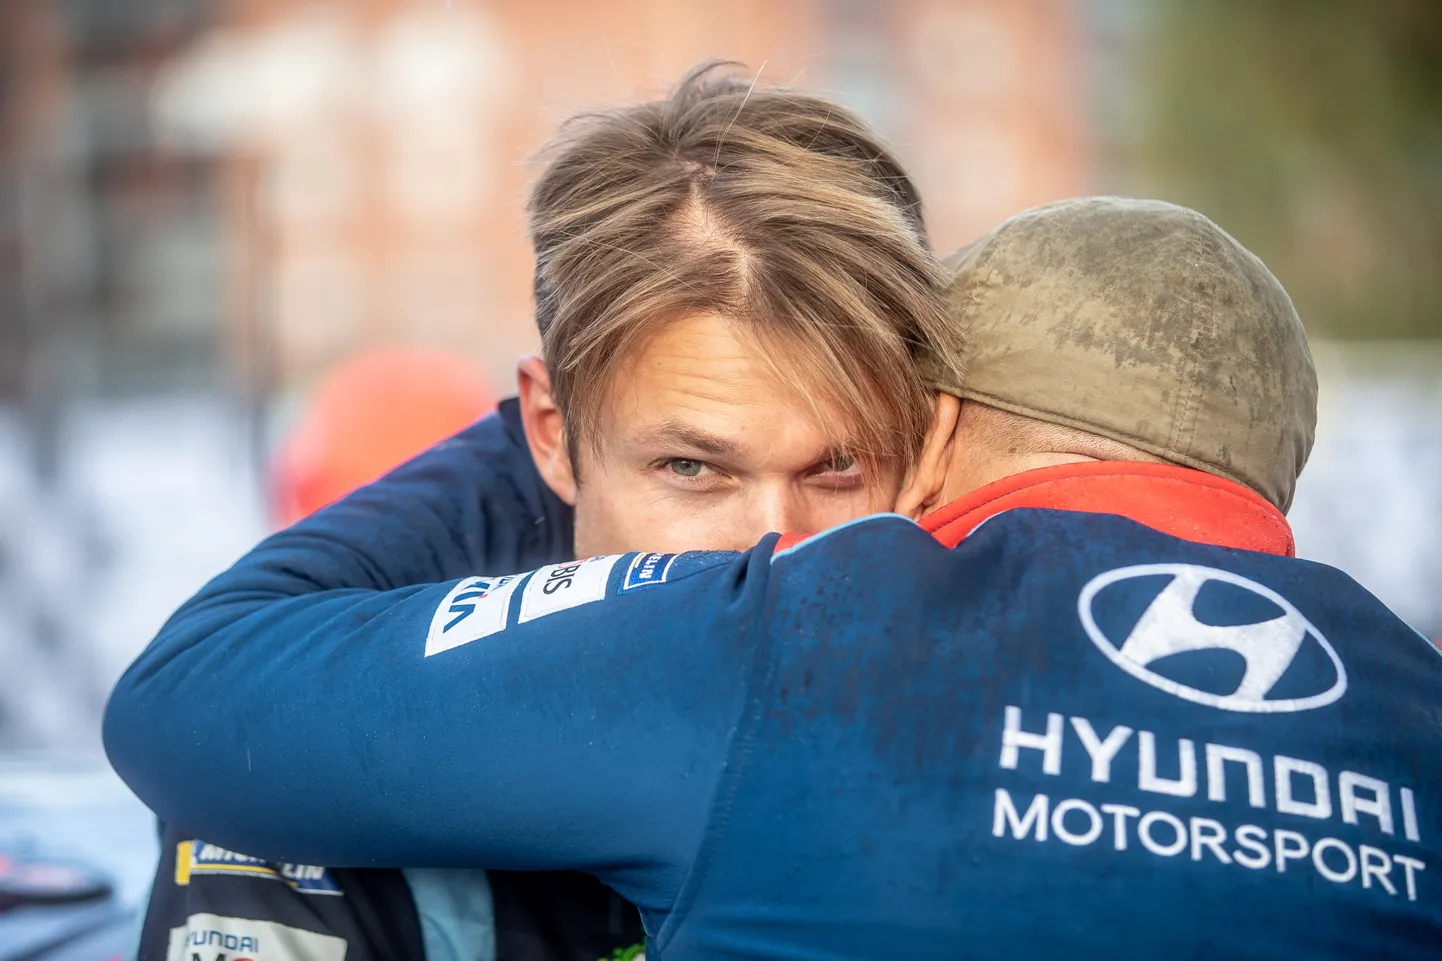 Viimati kihutas Andreas Mikkelsen Hyundai leeris. Kuid see ei tähenda tulevikku silmas pidades midagi.